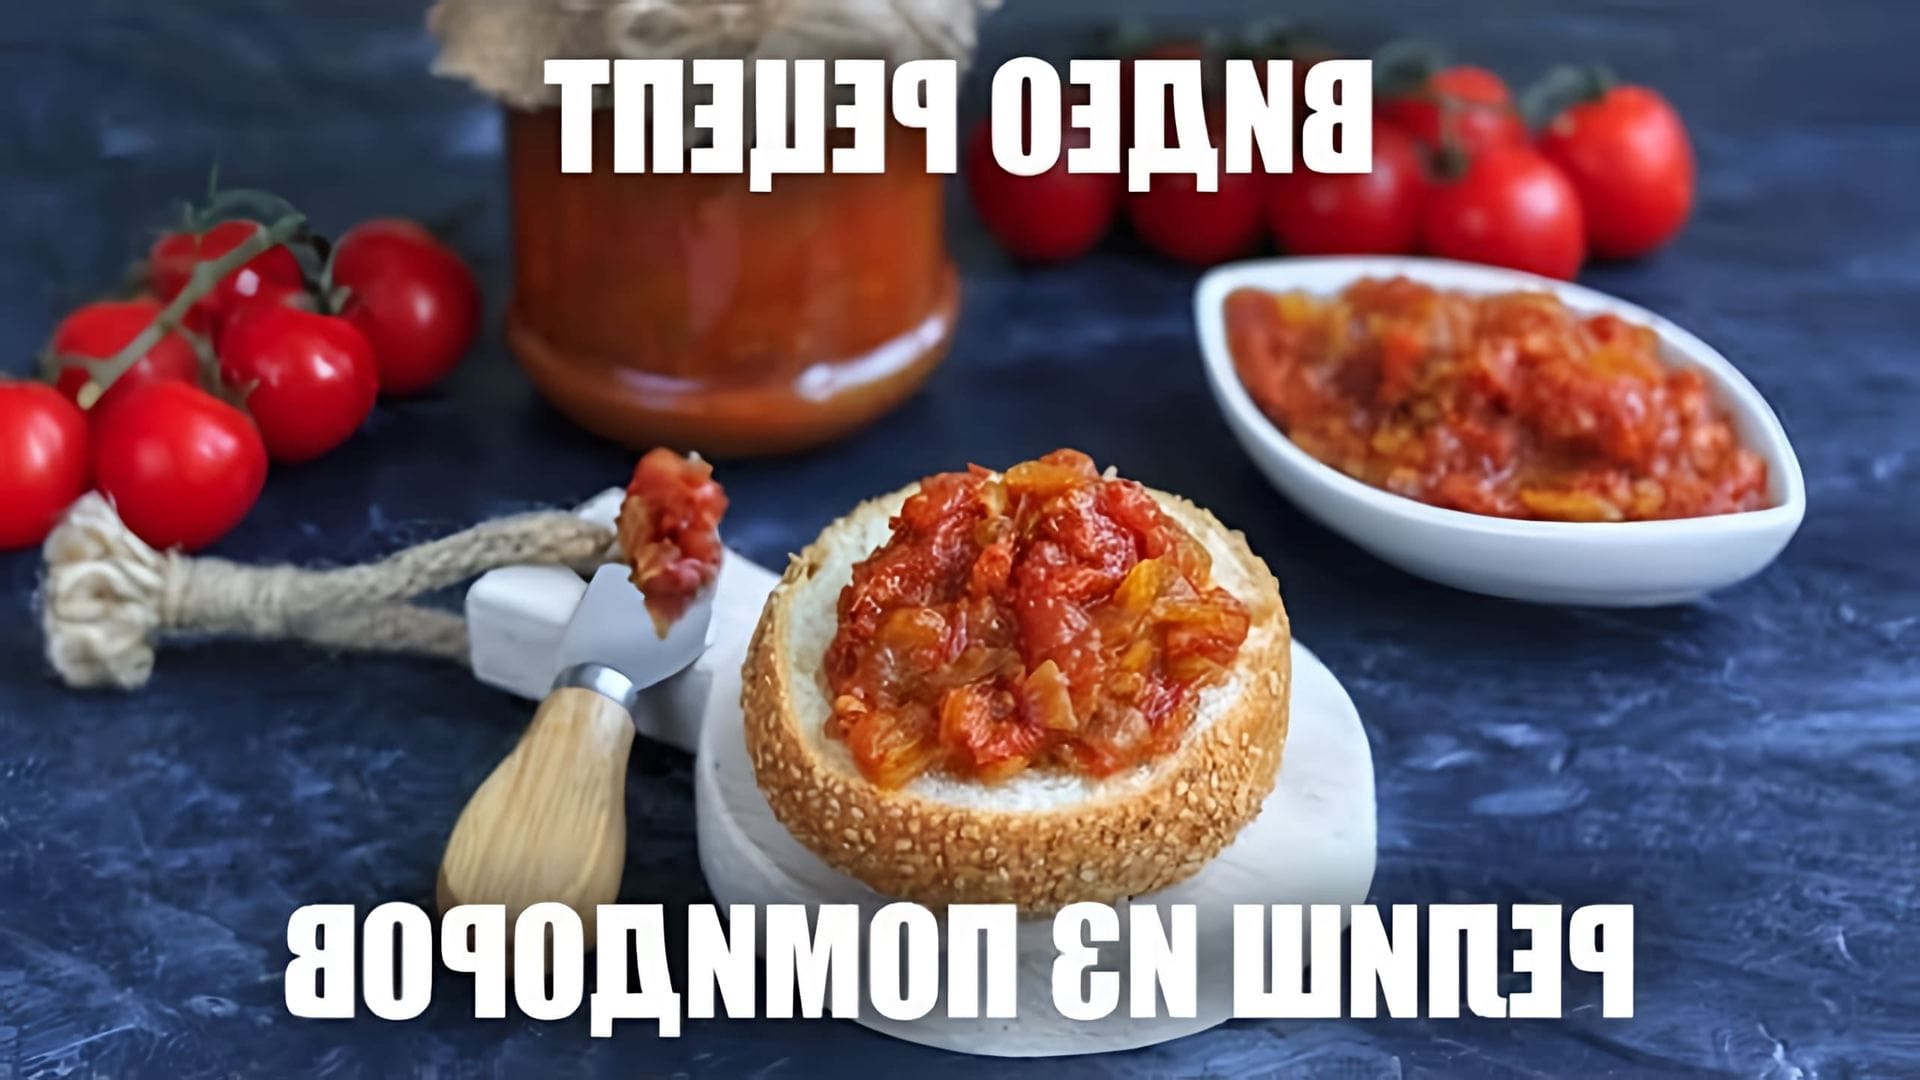 Релиш из помидоров — это вкусное и полезное блюдо, которое можно приготовить в домашних условиях